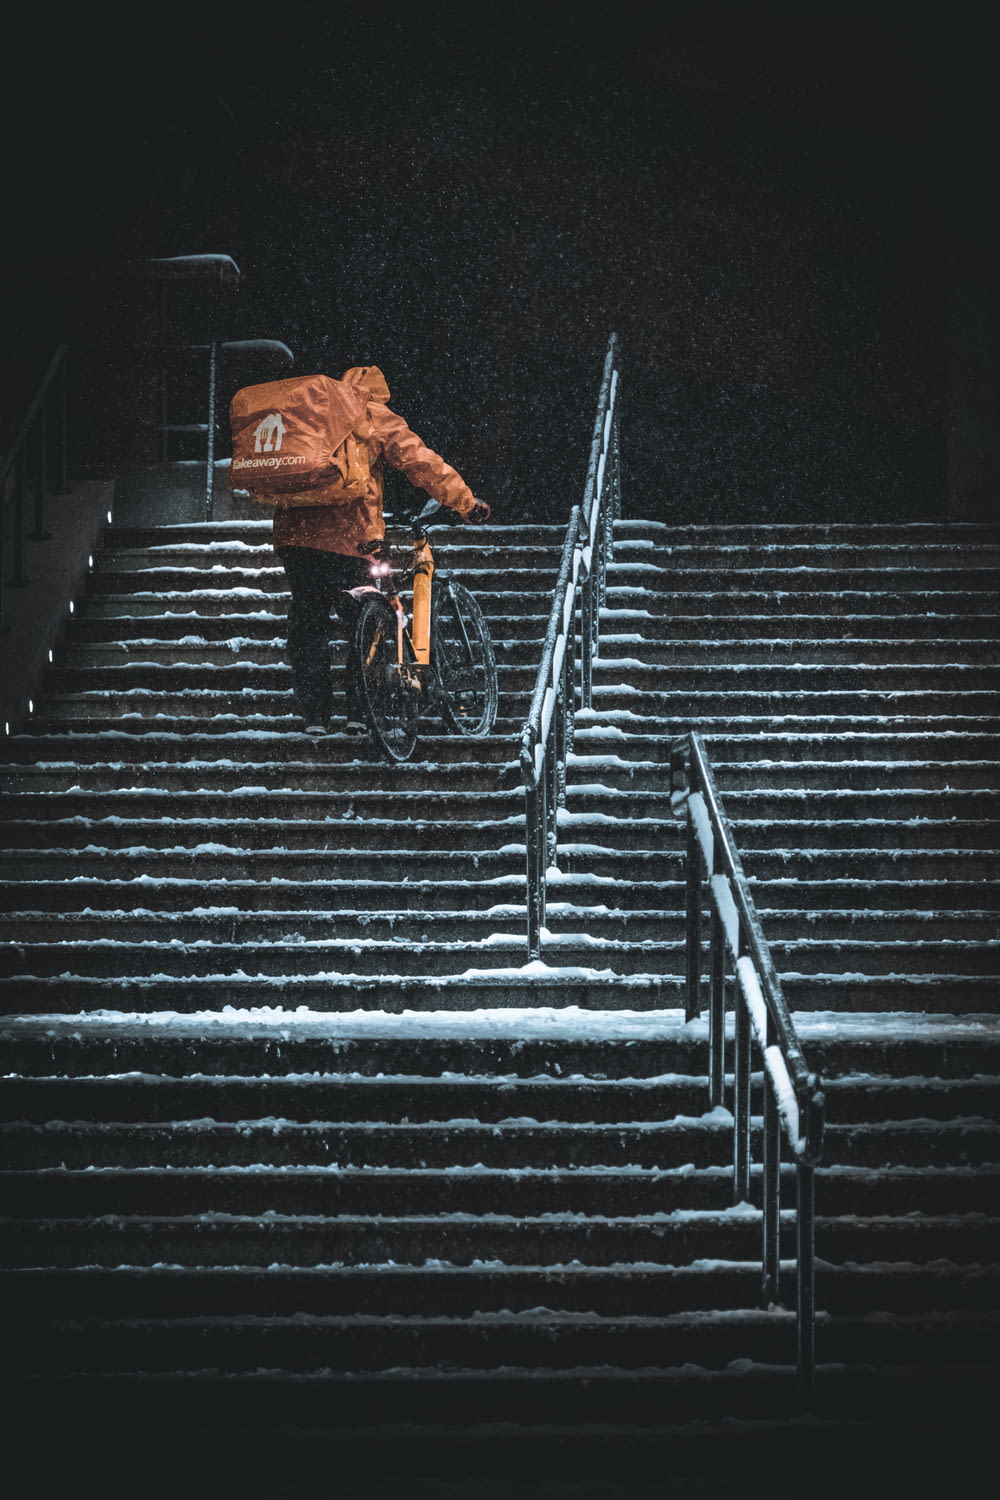 a person riding a bike down some steps